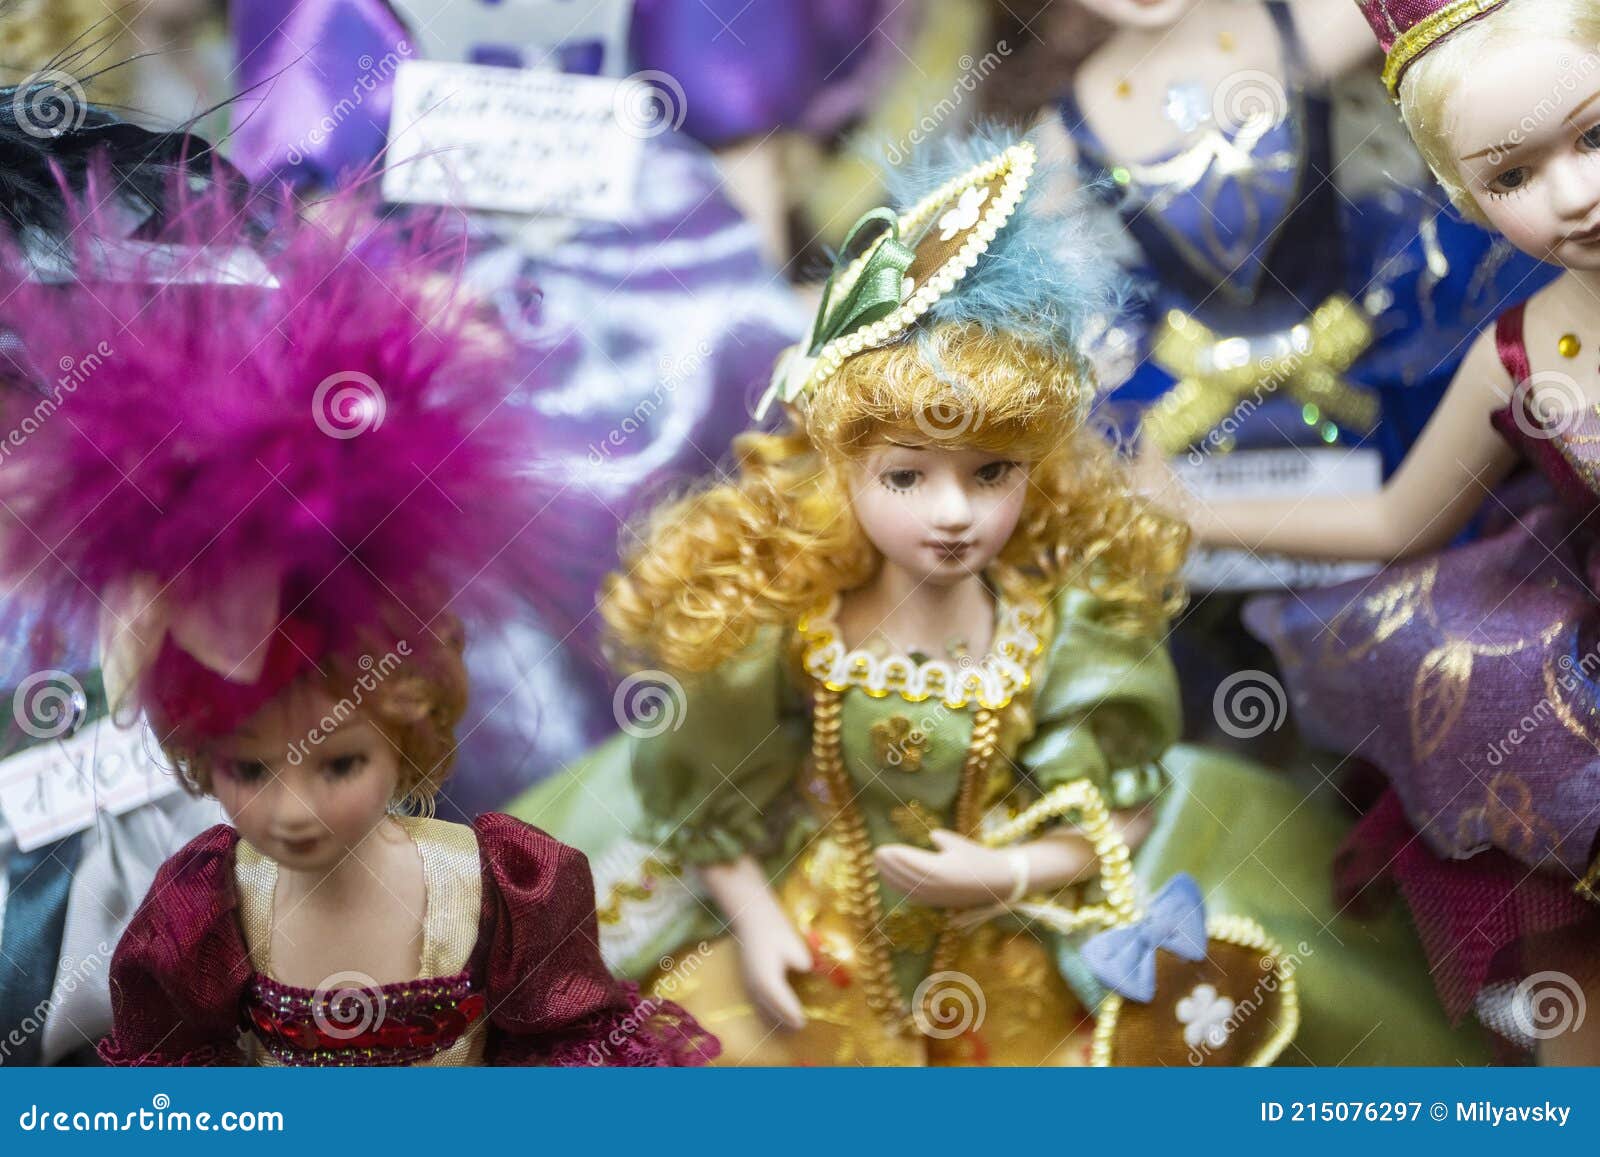 Muñecas De Porcelana En Vestidos De Colores Imagen de archivo - Imagen de compra, muchacha: 215076297